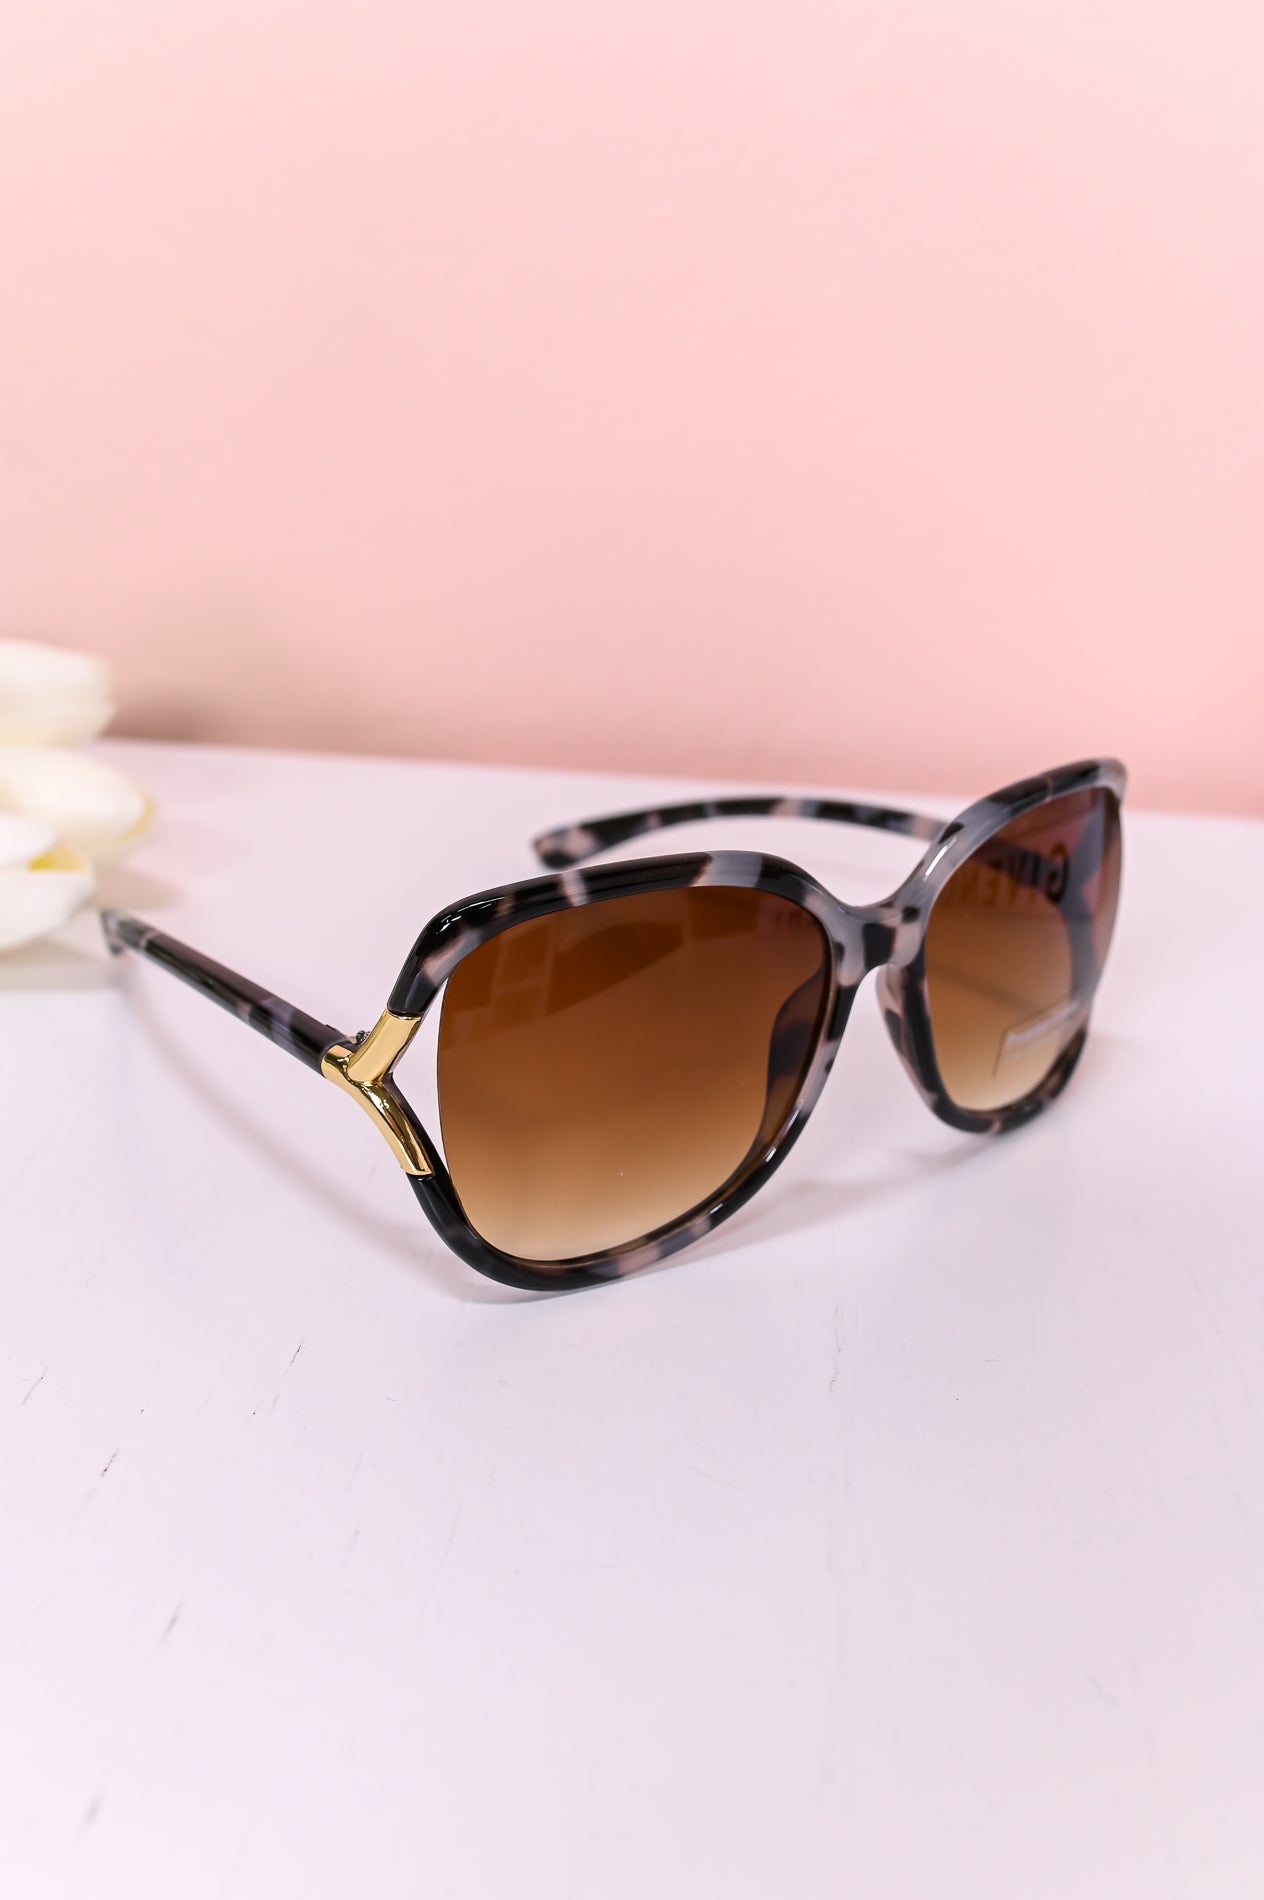 Black/White/Gold Printed Sunglasses - SGL346BK